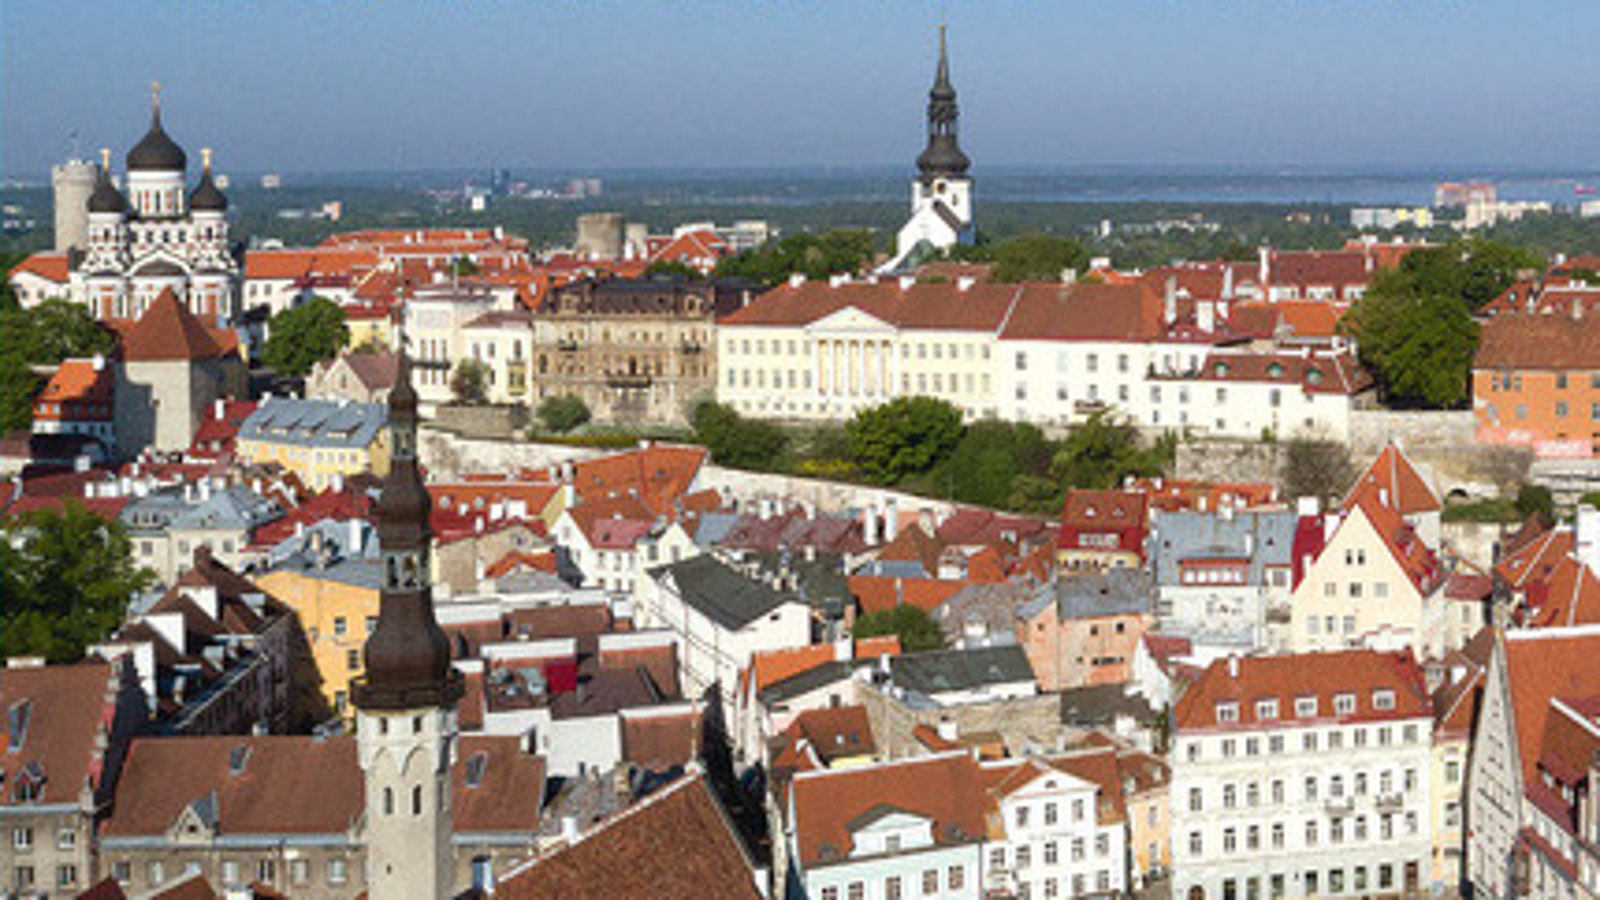 Kuvassa on Tallinnan vanhankaupungin kattoja ja rakennuksia kuvattuna ilmasta.  Kuva on otettu aurinkoisena päivänä  ylimpänä näkyy sinistä taivasta.